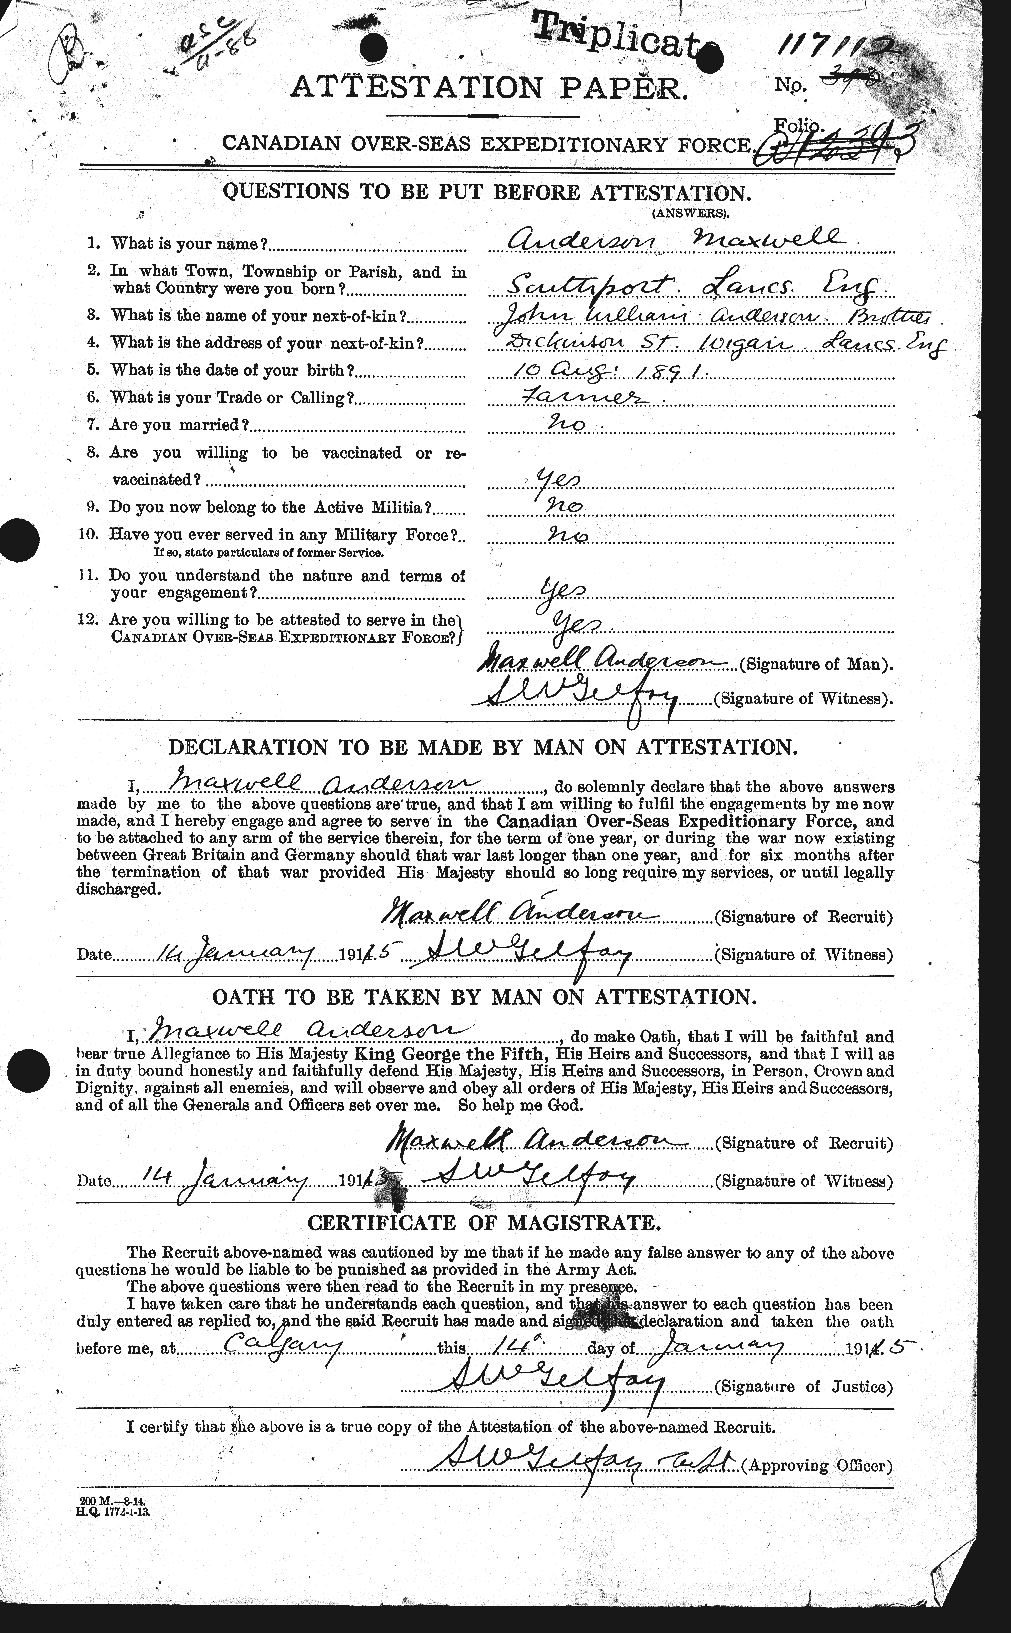 Dossiers du Personnel de la Première Guerre mondiale - CEC 207462a